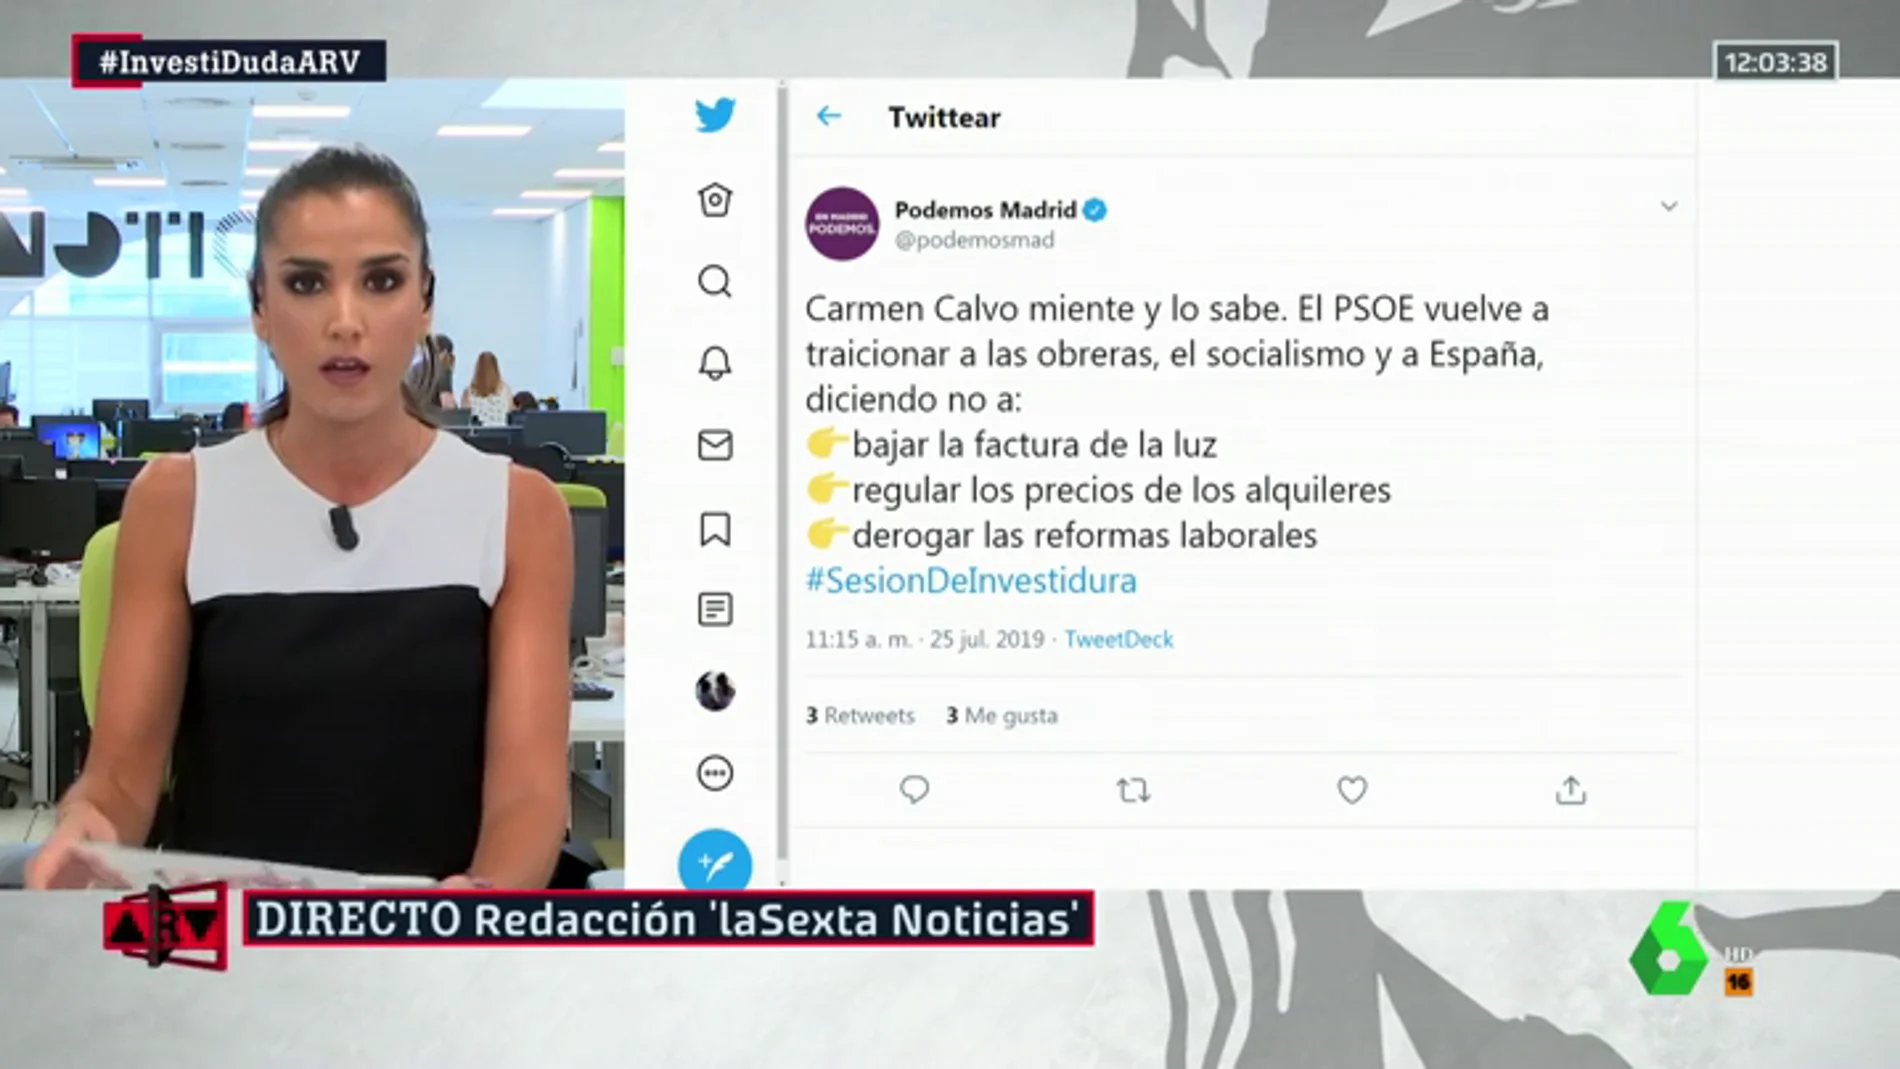 Podemos elimina el tuit que acusaba a Carmen Calvo de "mentir" y al PSOE de "traicionar al socialismo"